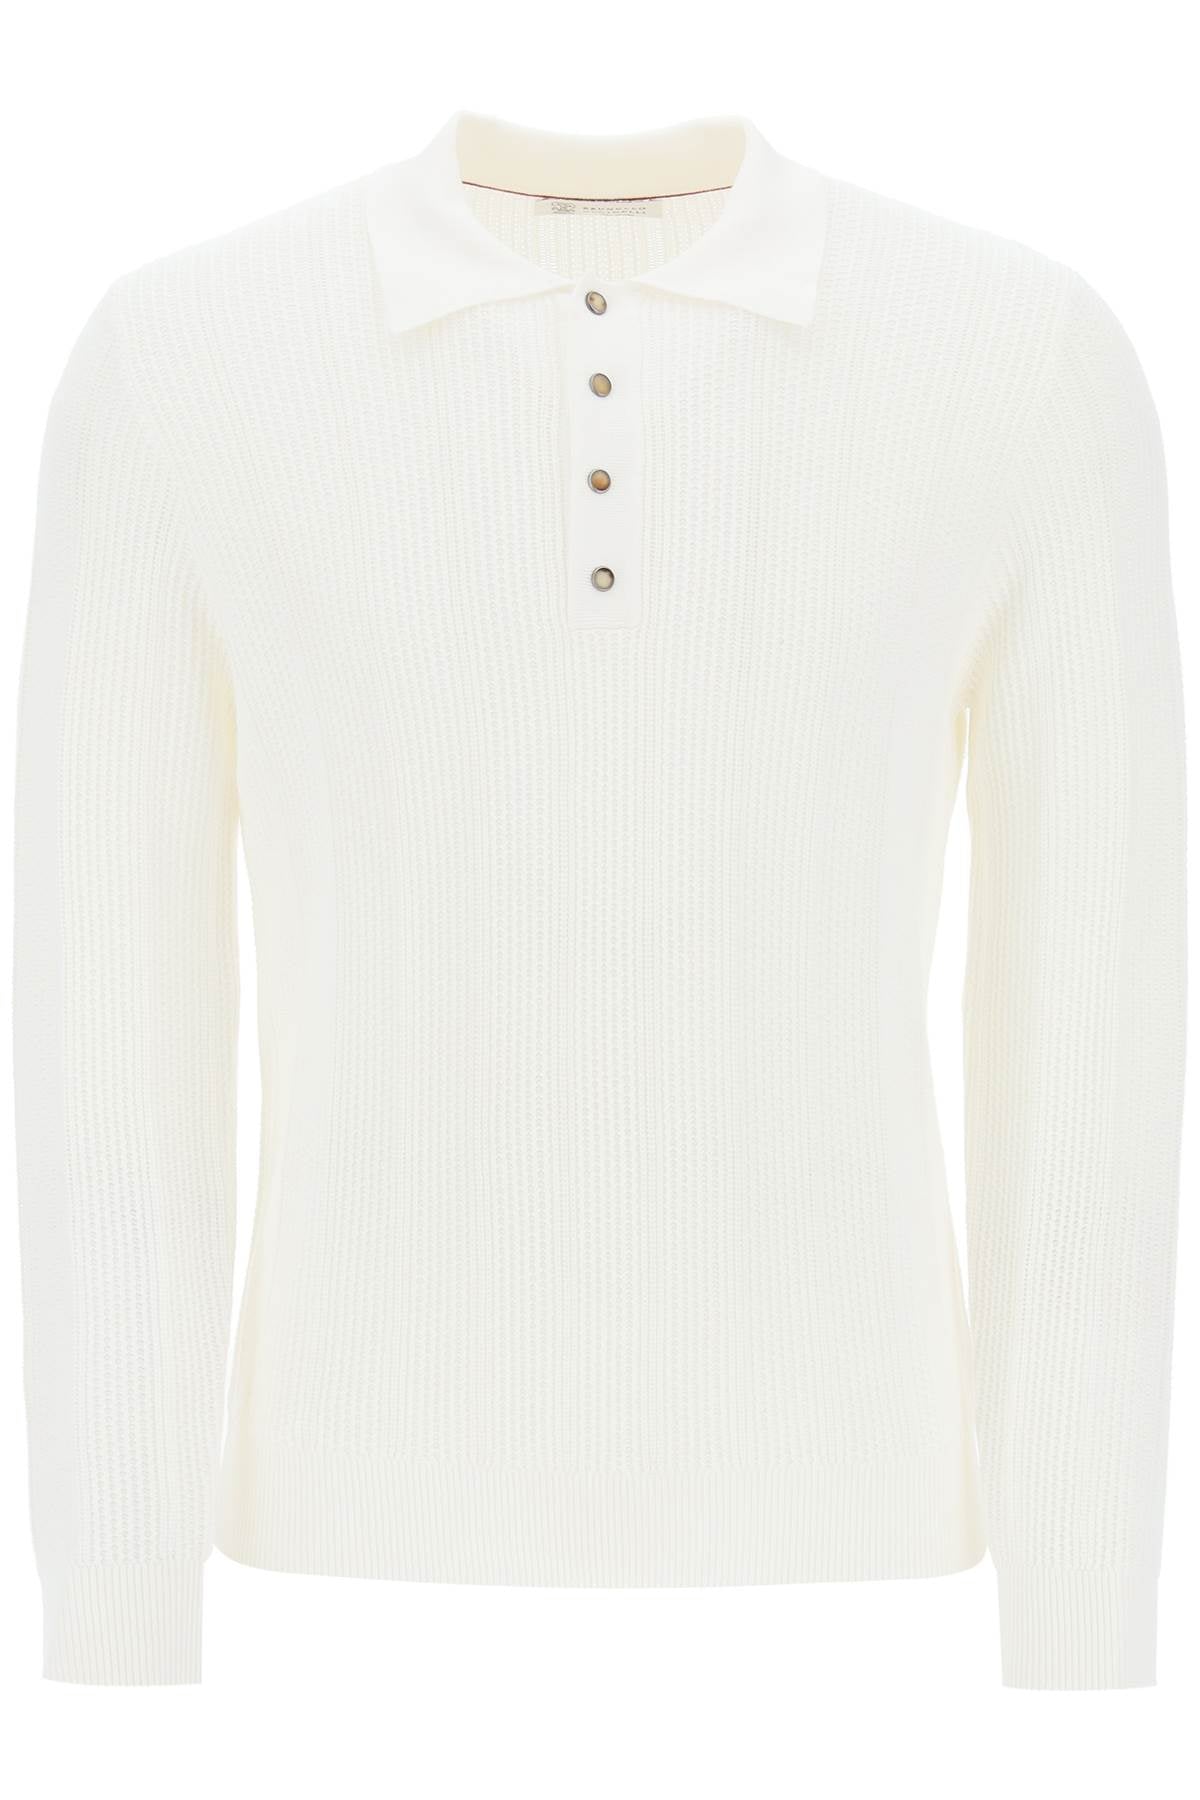 BRUNELLO CUCINELLI White Long-Sleeved Pointelle Knit Polo Shirt for Men